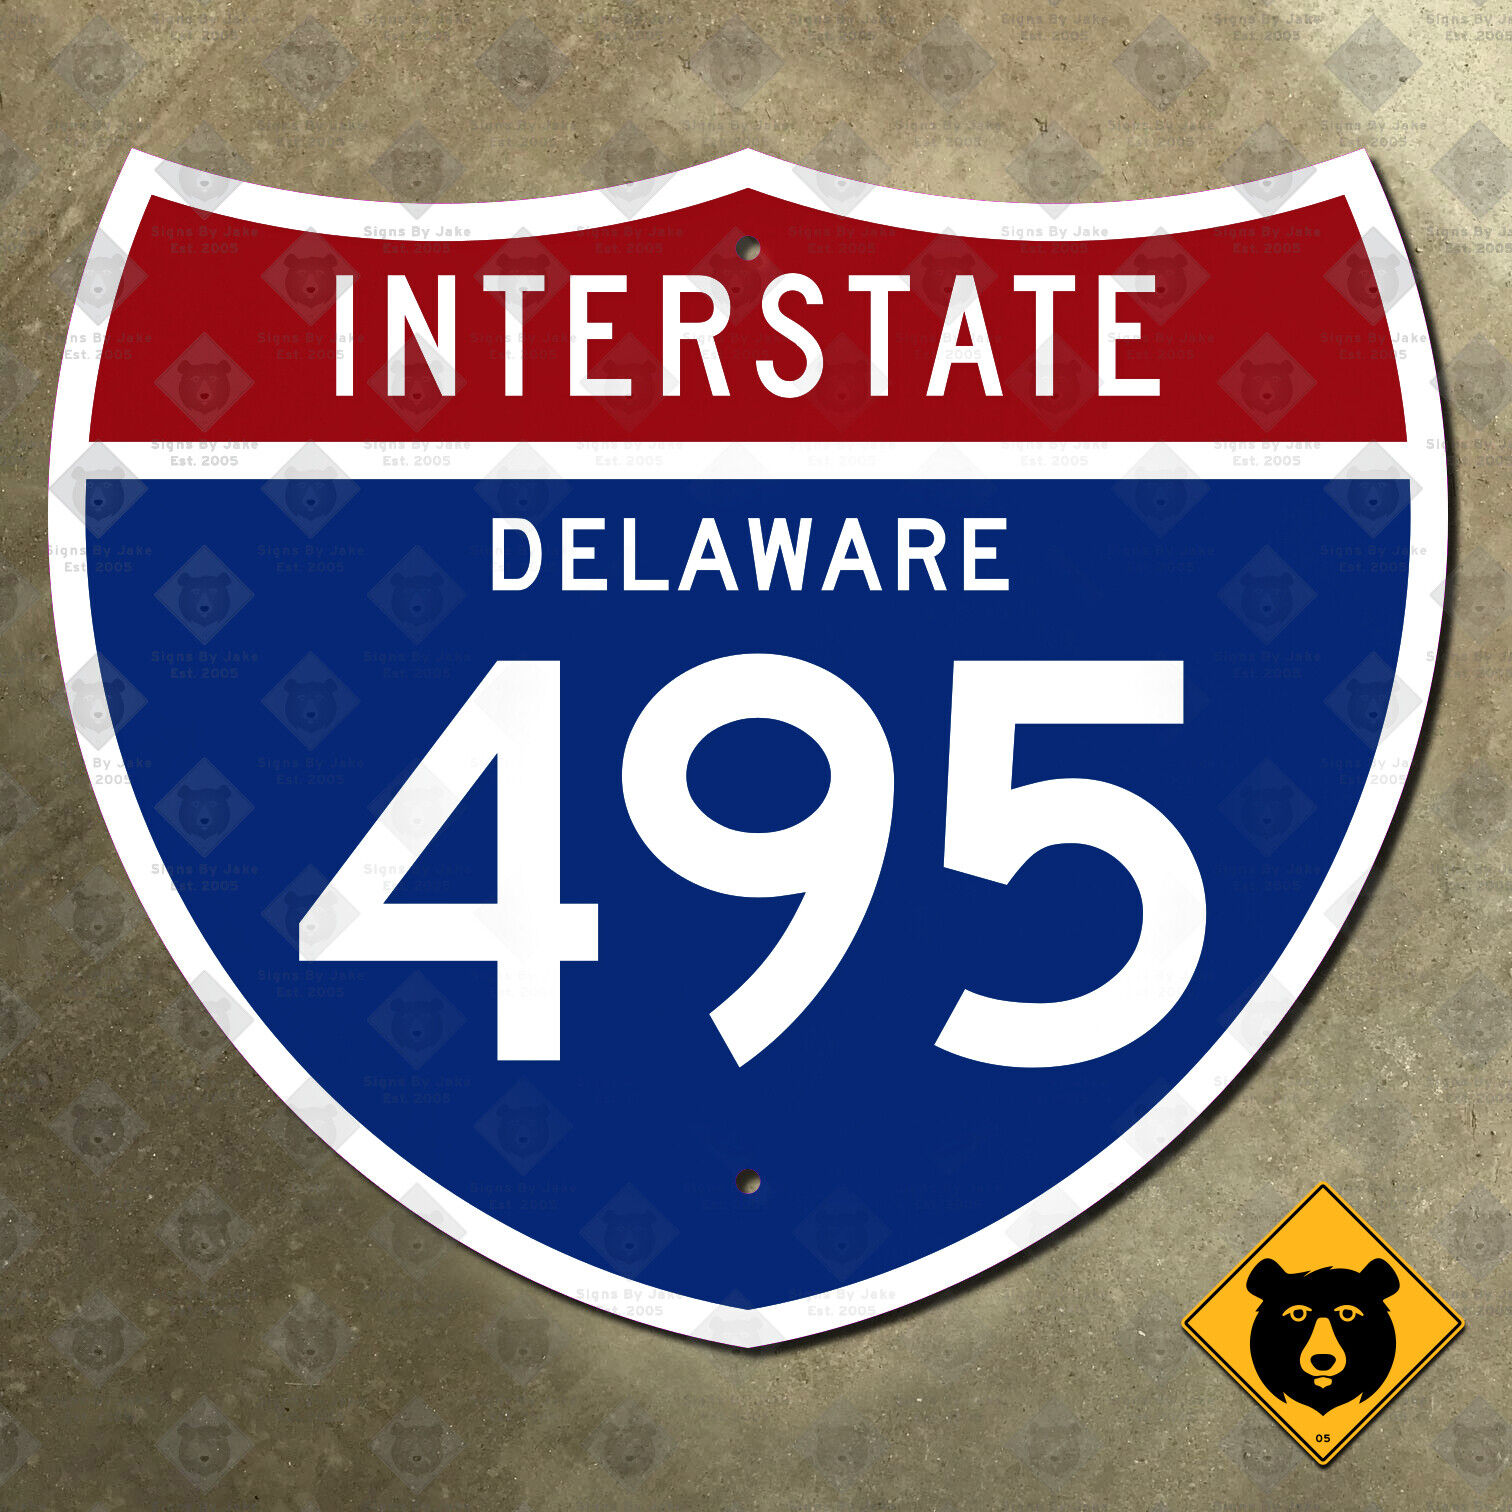 Delaware Interstate 495 highway marker 12x10 Wilmington Claymont